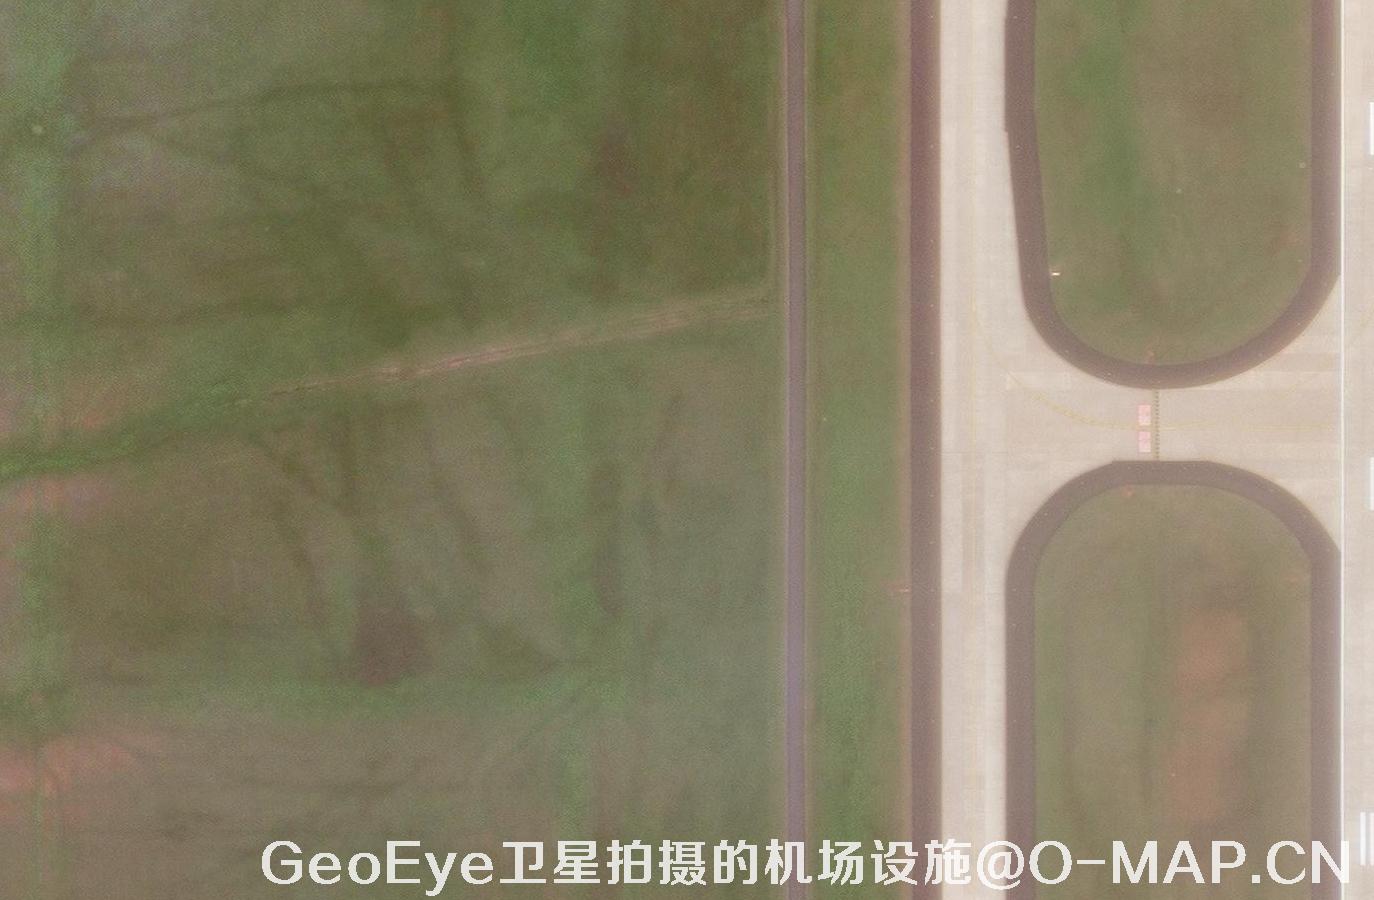 0.5米GeoEye卫星图可用于林业违法鉴定